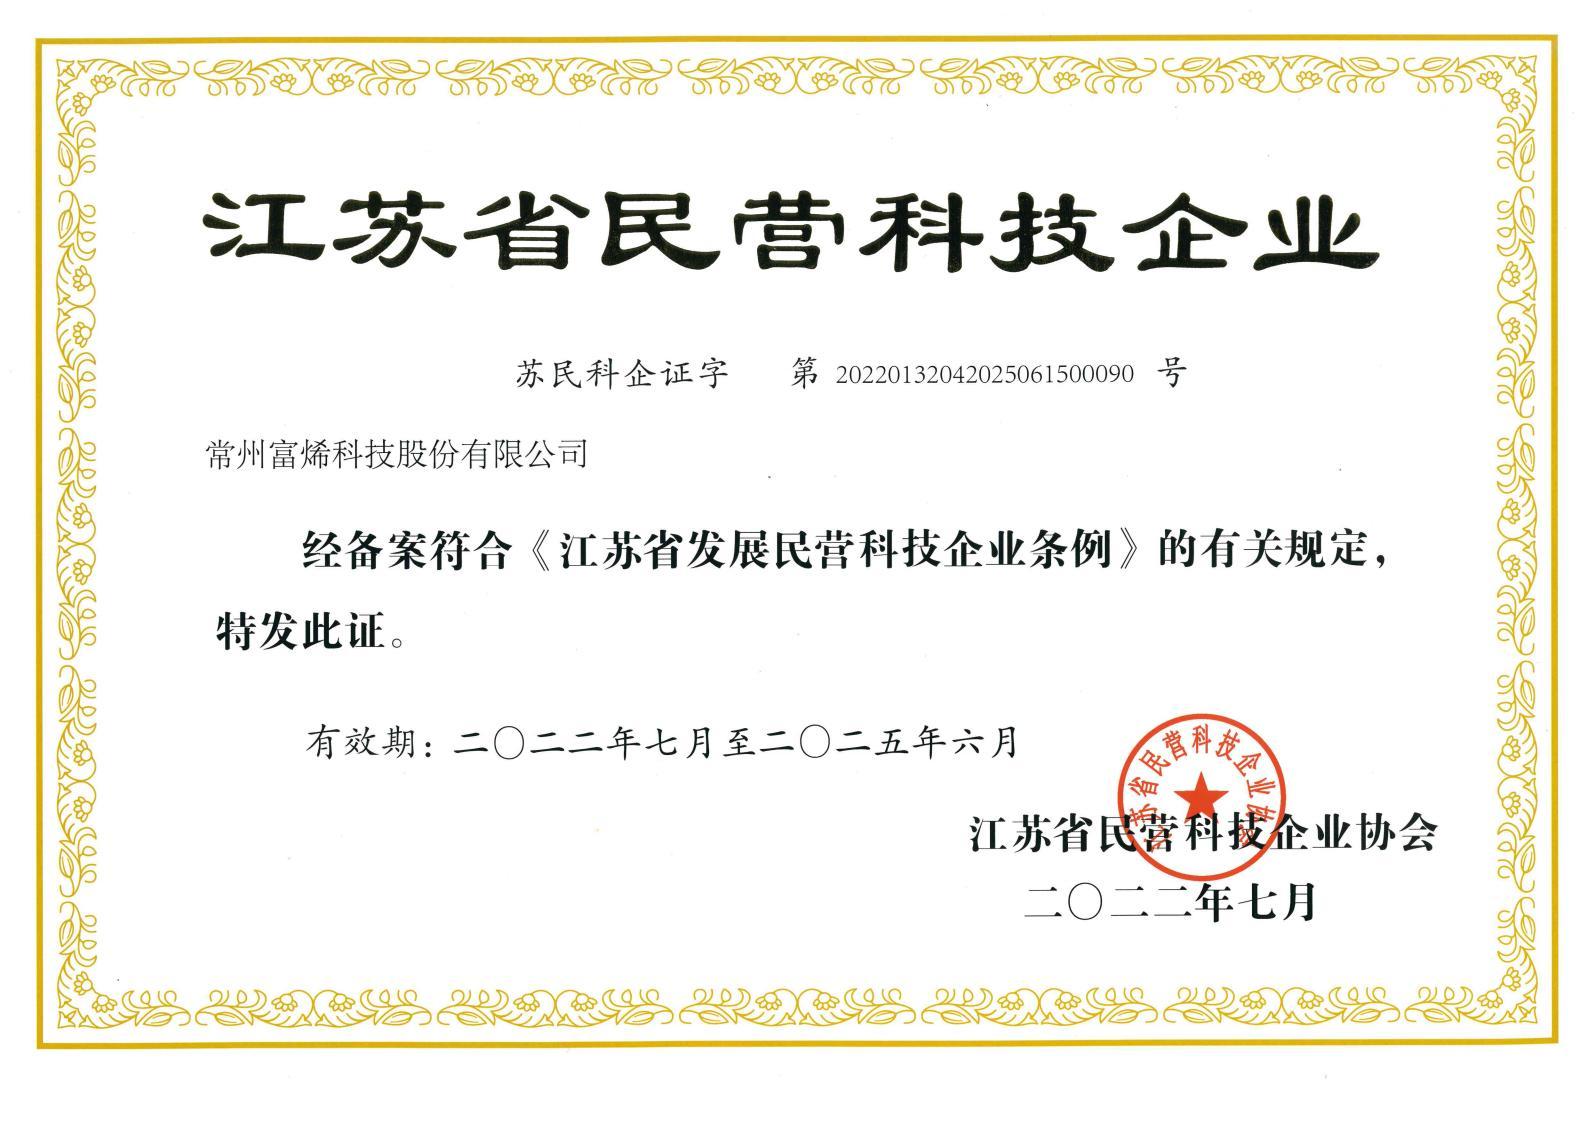 江苏省民营科技企业-证书